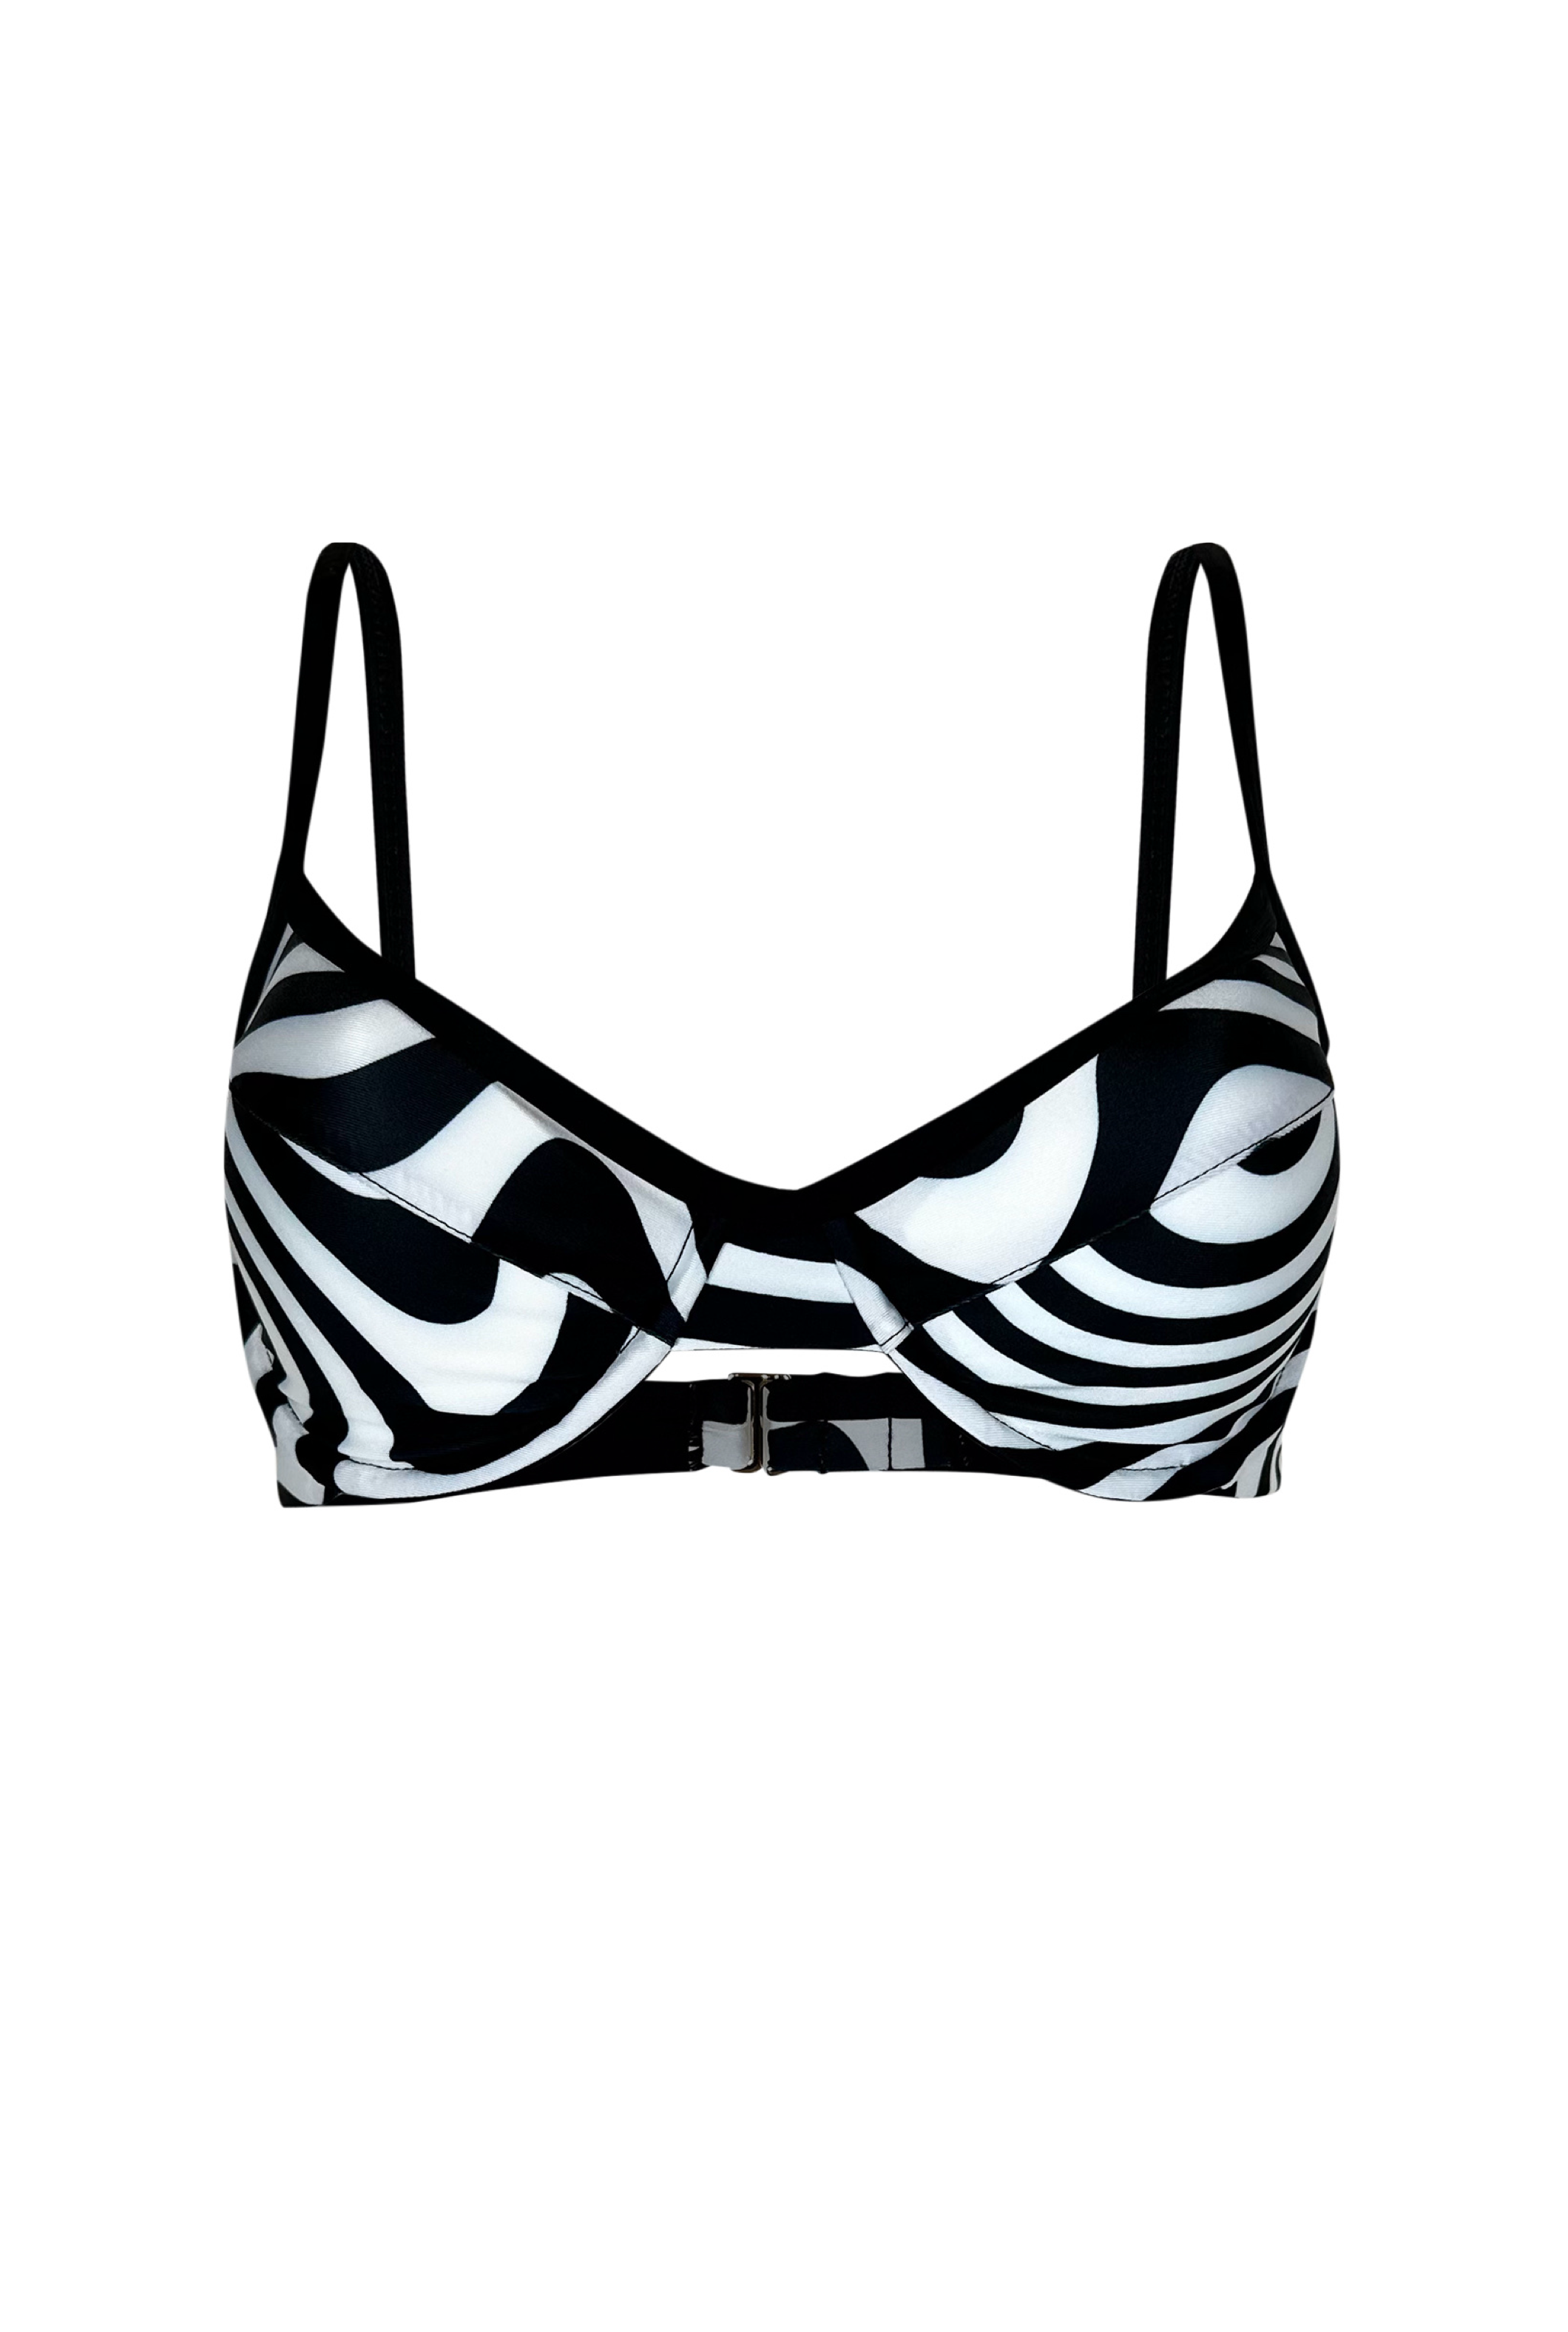 black and white printed bikini top underwire